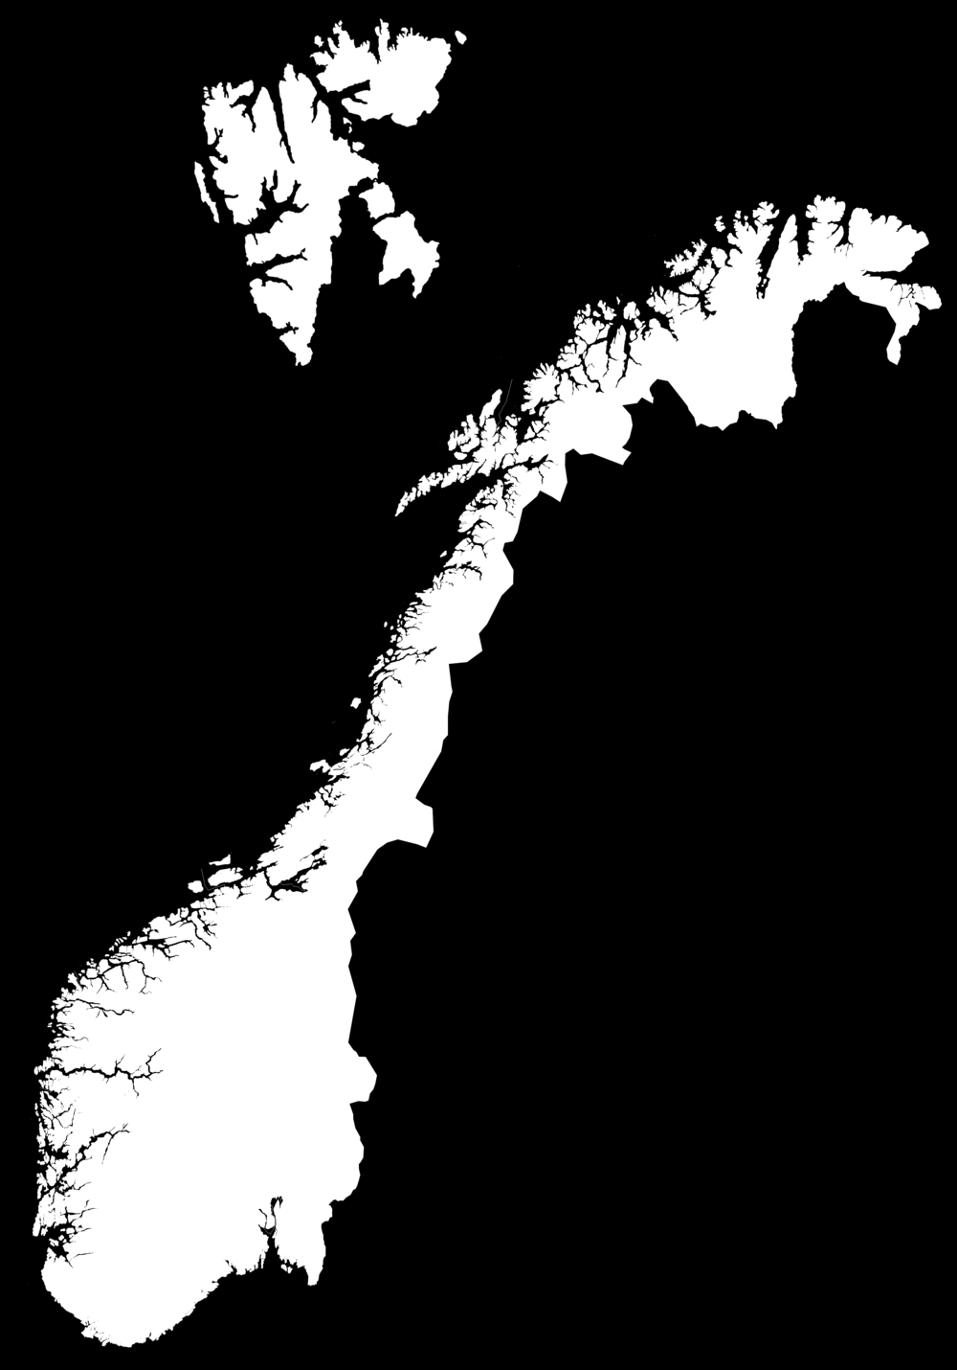 Universitets- og regionsykehus for Nordland, Troms, Finnmark og Svalbard